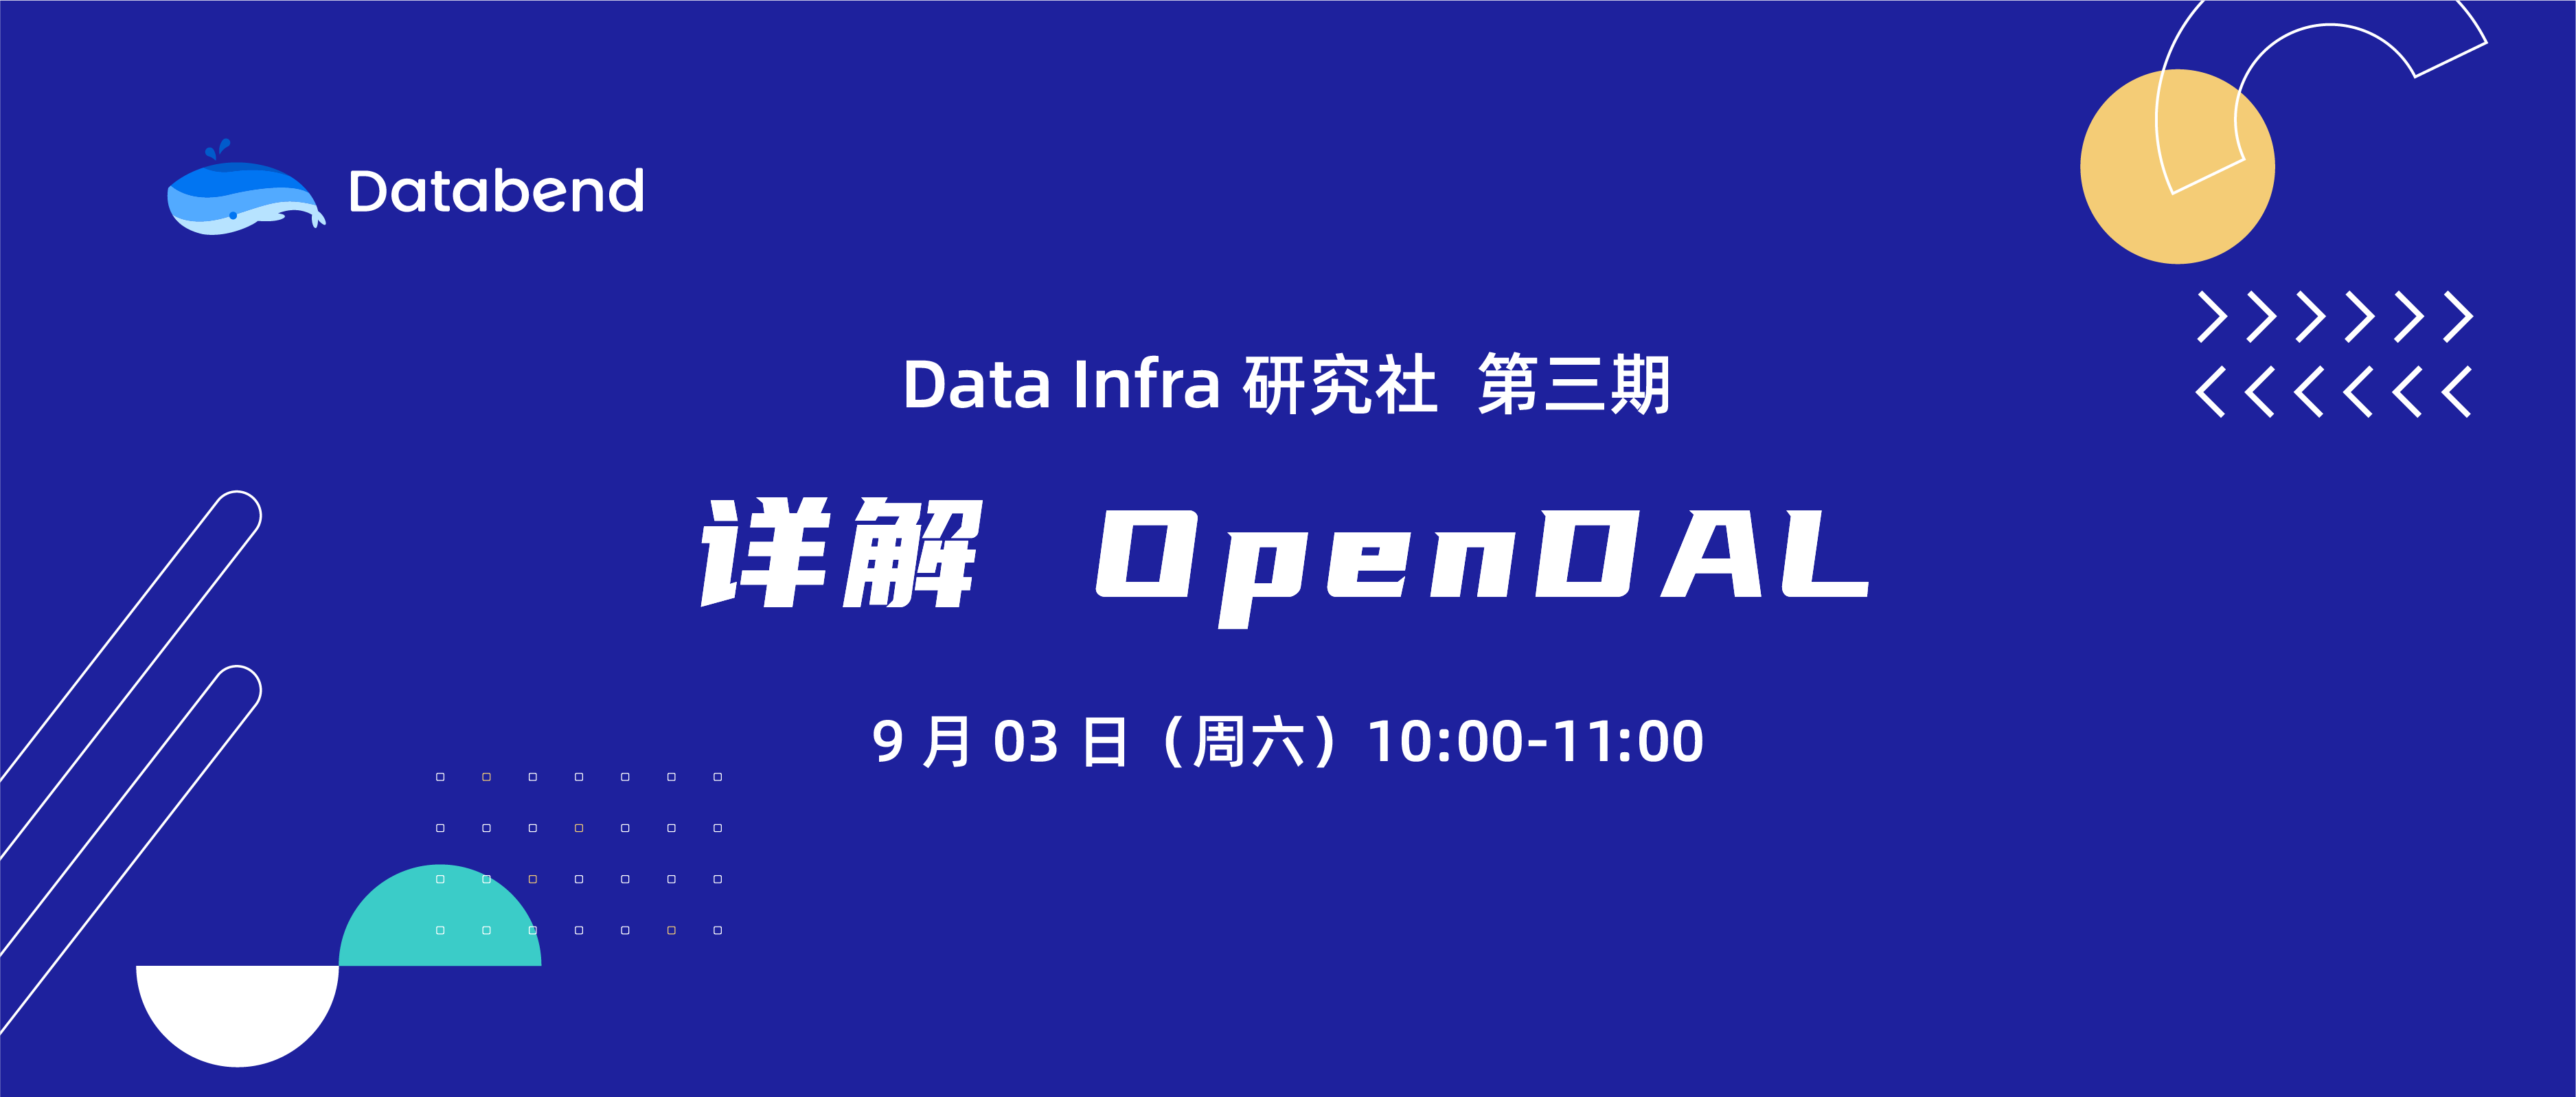 详解 OpenDAL ｜Data Infra 研究社第三期